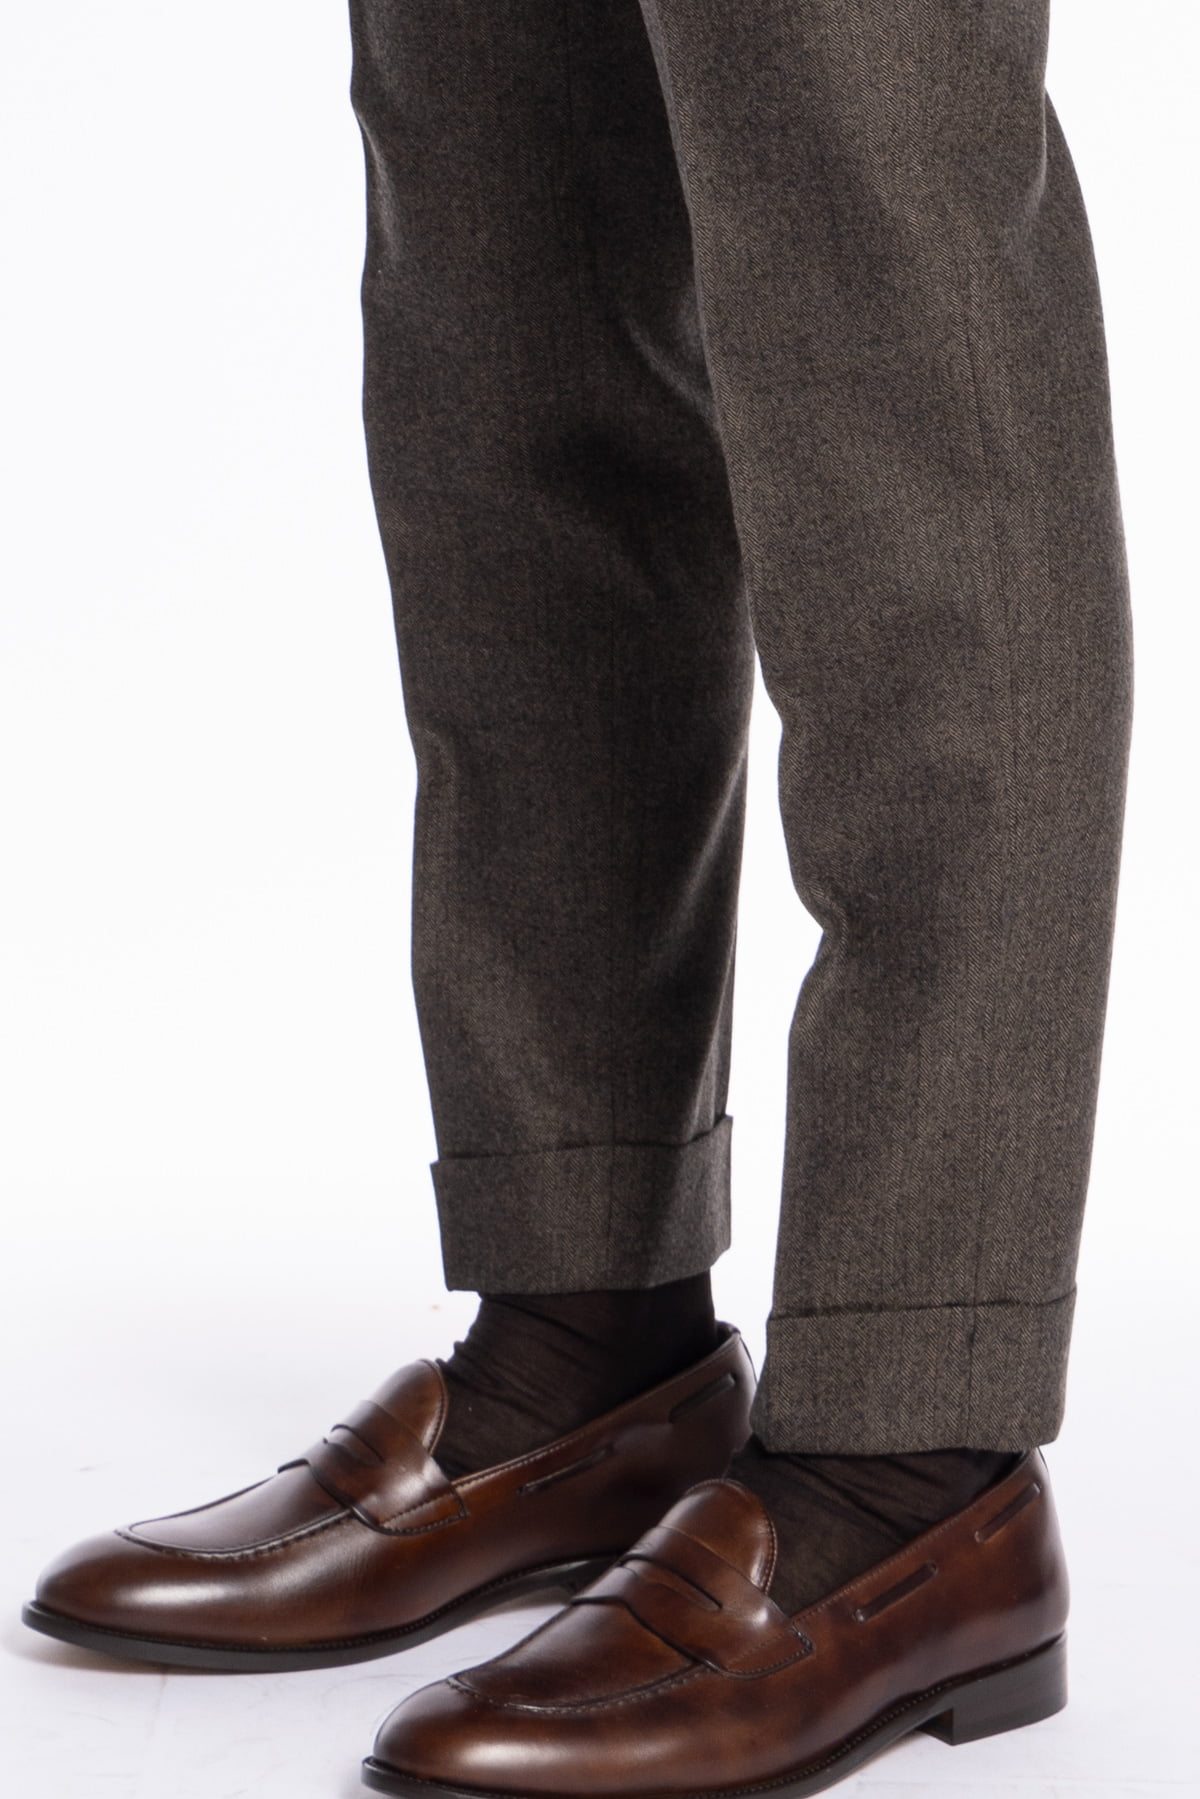 Pantalone uomo marrone spigato vita alta tasca america in lana flanella Holland & Sherry con doppia pinces e fibbie laterali regolabili